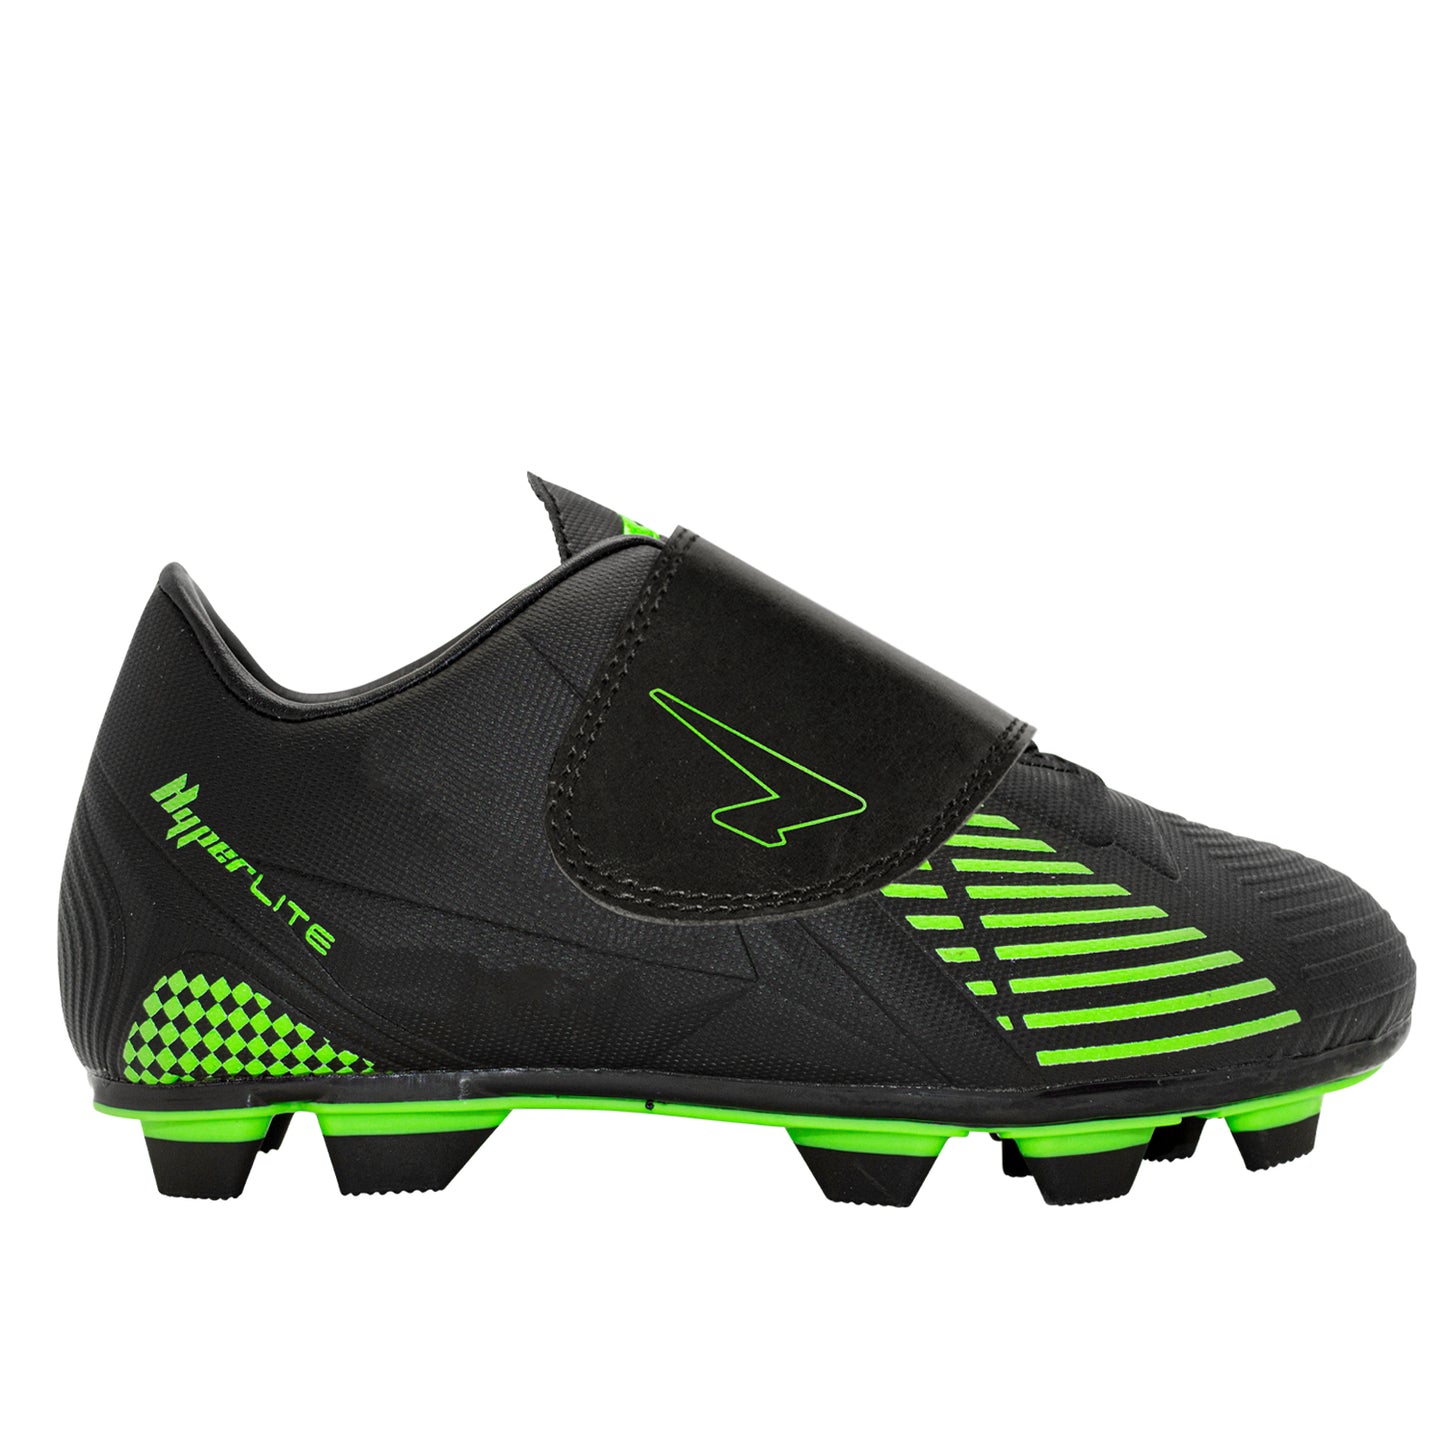 Vector Junior Football Boots - Black/Green V Strap